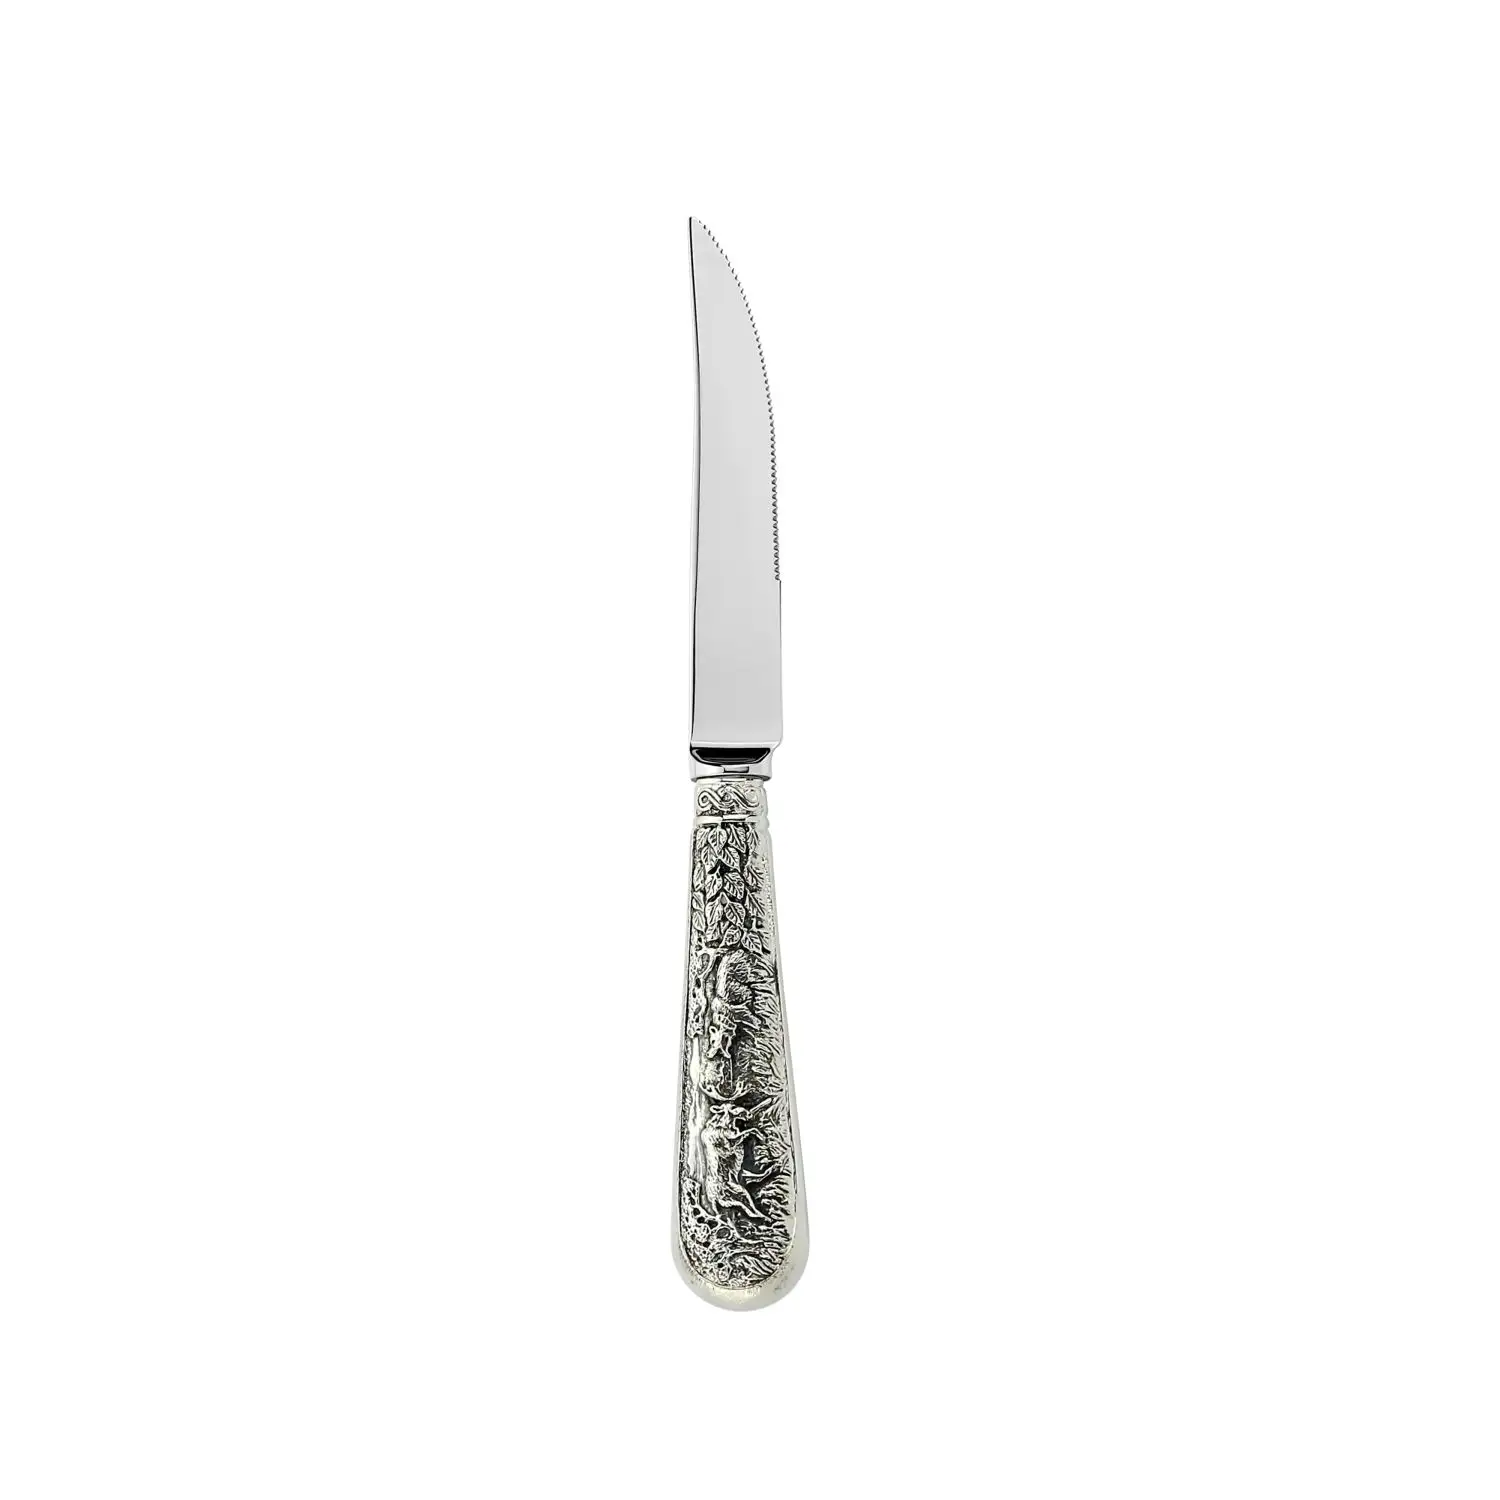 Нож для стейка с крупными зубцами Лось посеребренный полированный с чернением нож д стейка лось посеребренный полиров с черн